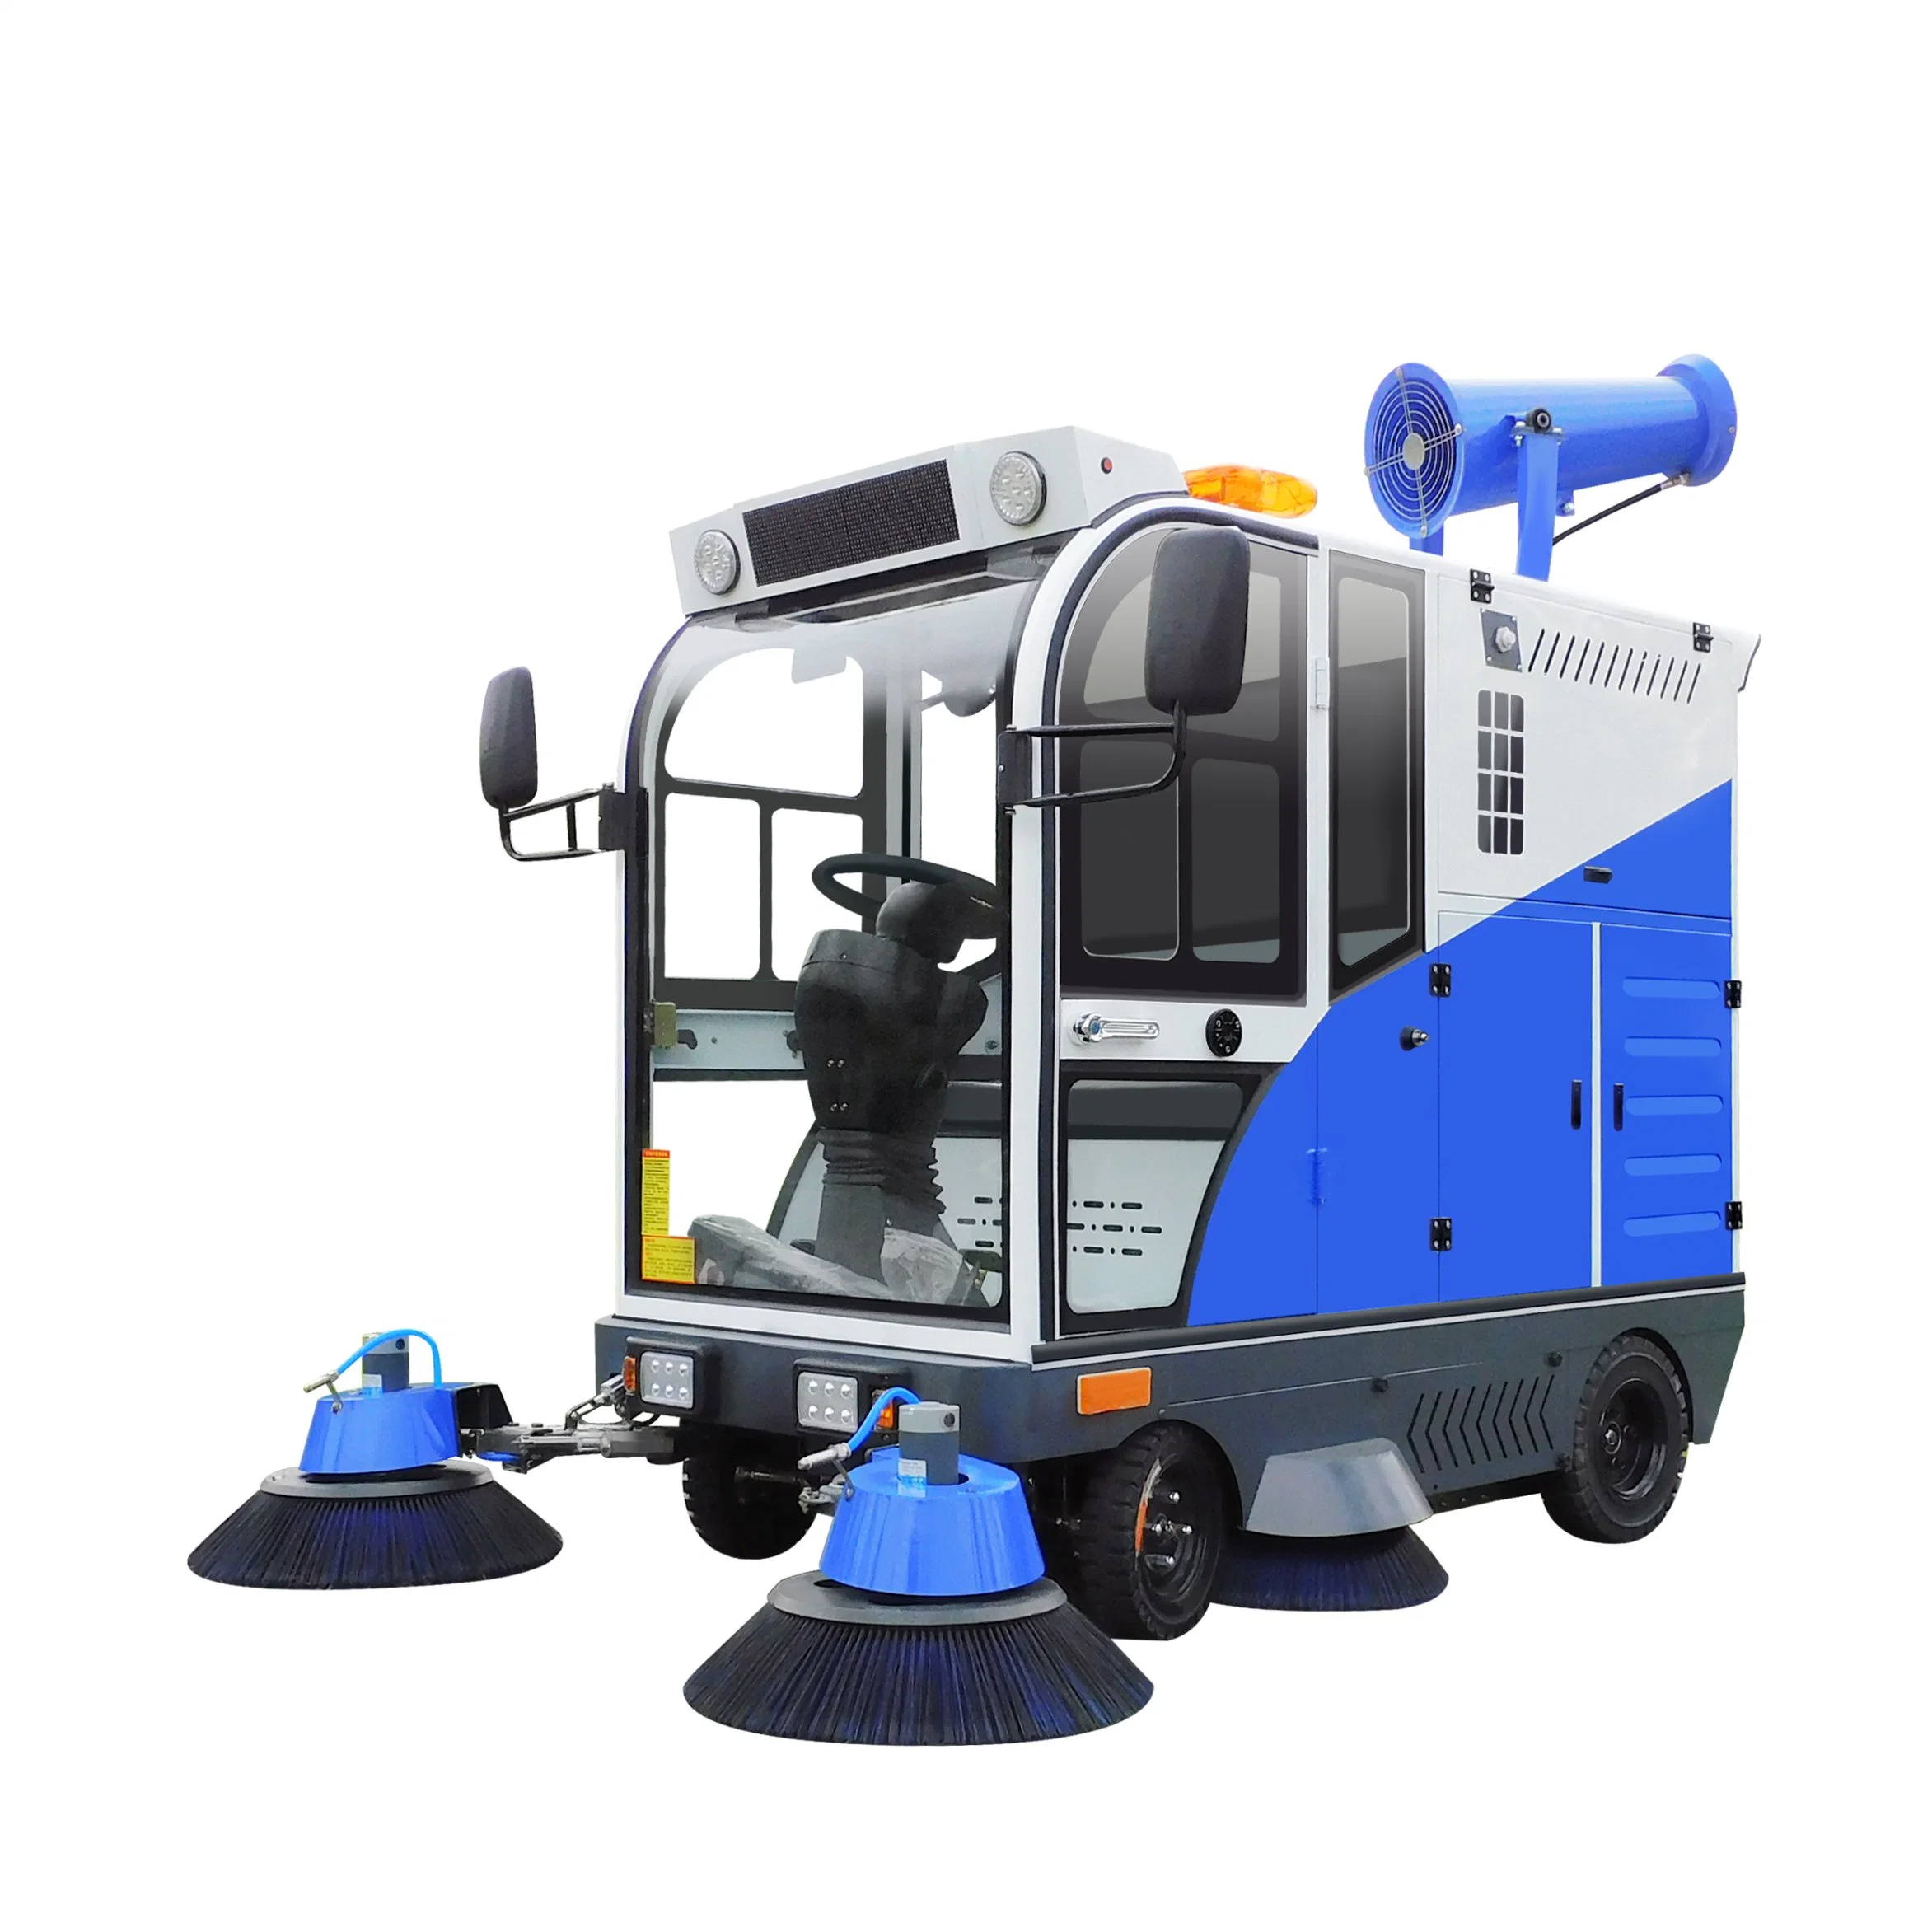 Equipo de limpieza con la mejor planta de gran capacidad Street Sweeper máquina arrolladora del parque de juegos